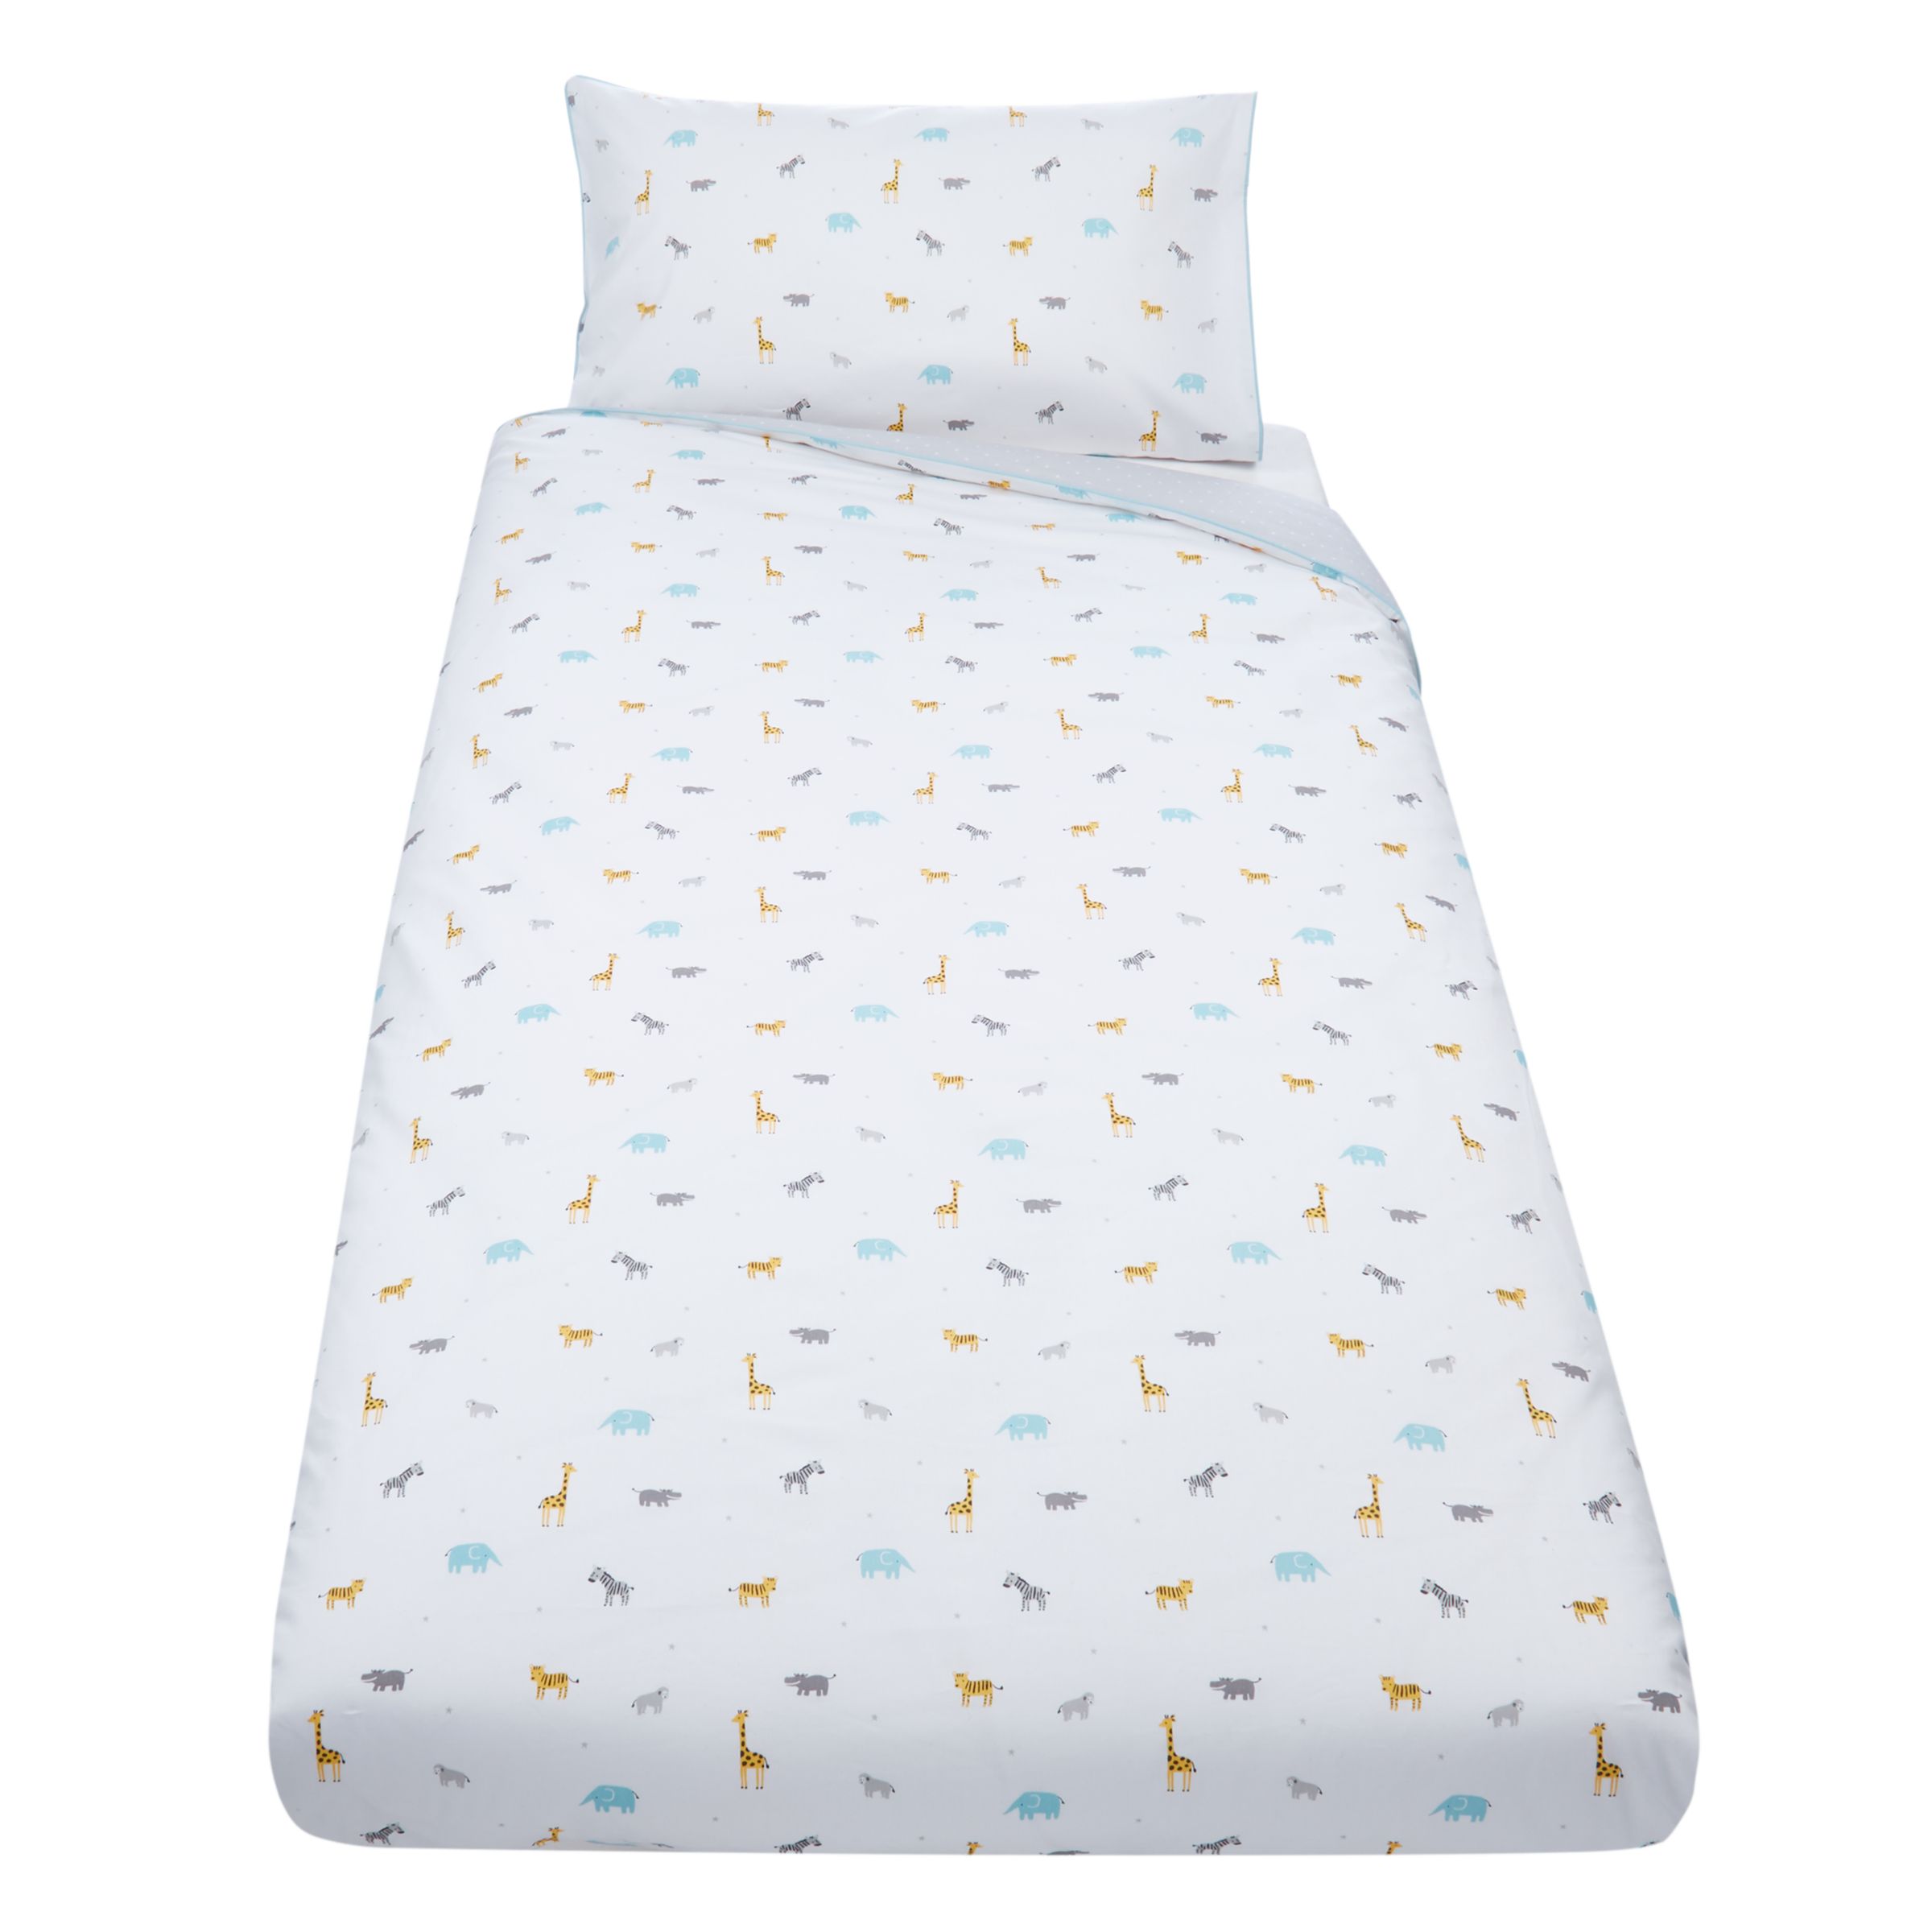 John Lewis Partners Baby Safari Cot Duvet Cover And Pillowcase